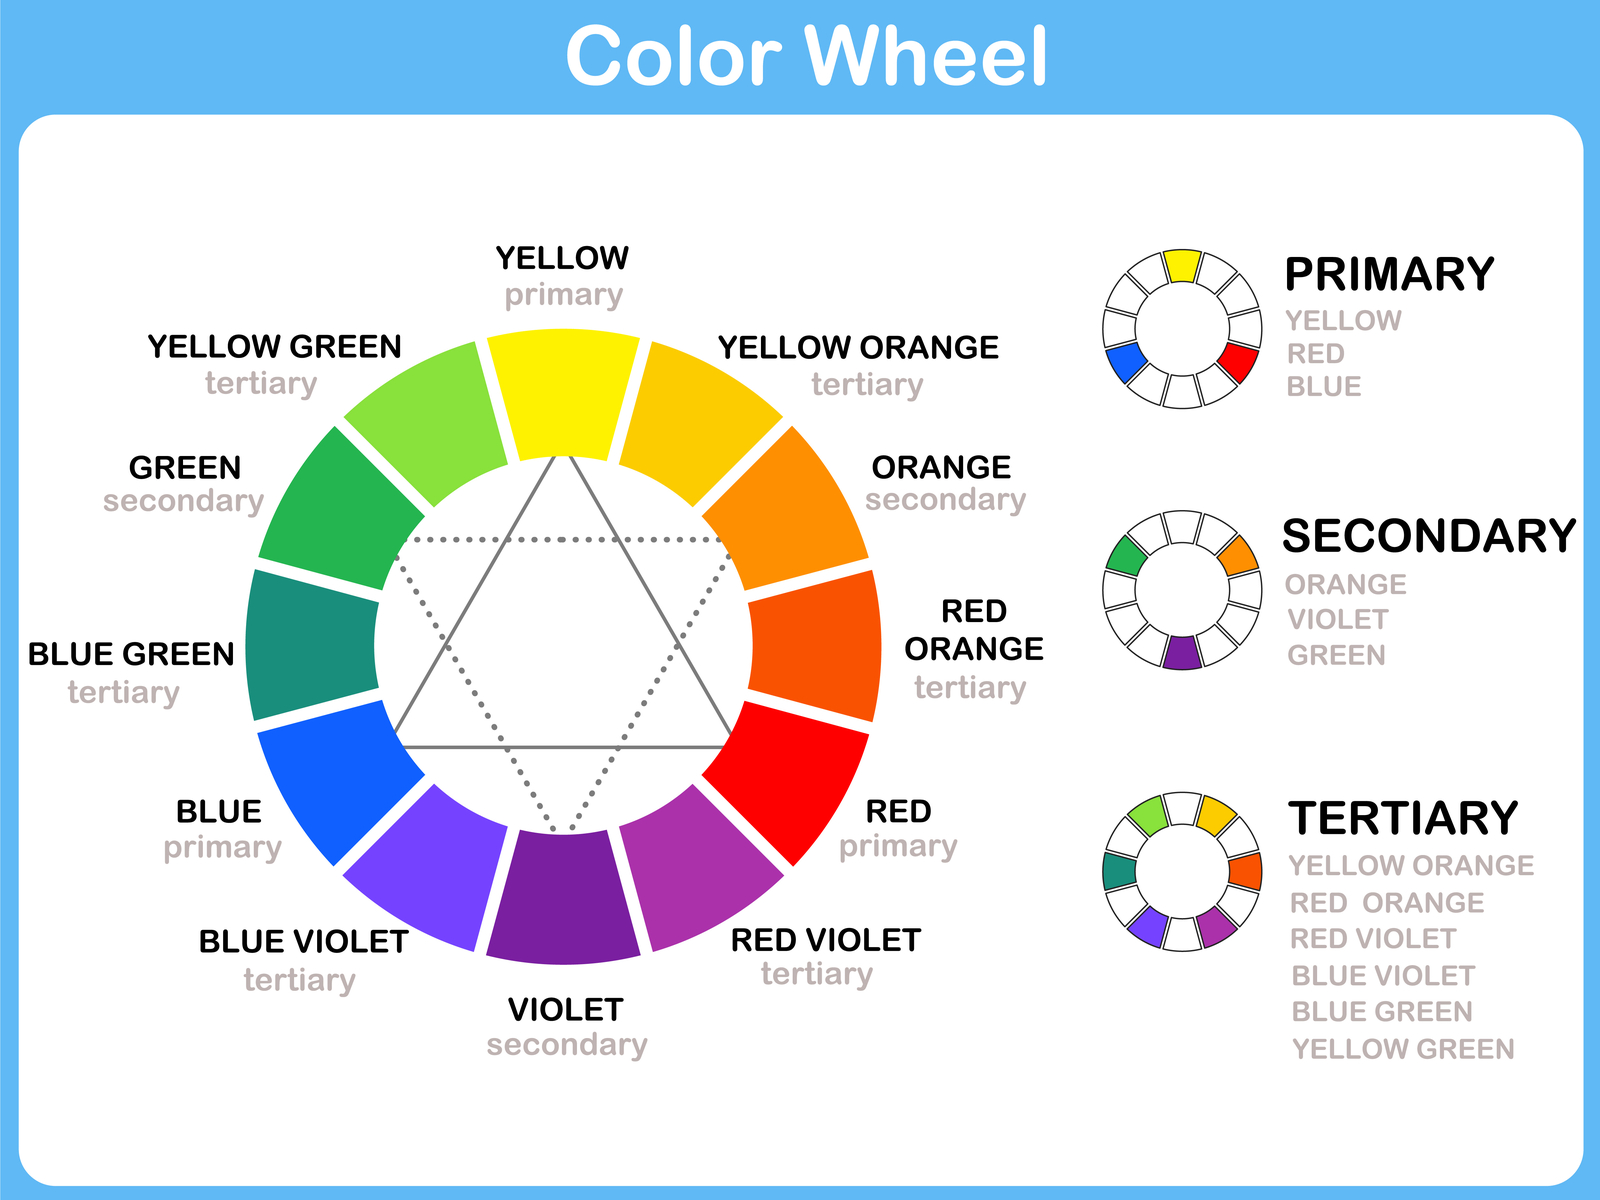 Hình ảnh hiển thị biểu đồ màu với các màu chính, phụ và cấp ba trên đó cho một phần về màu nào loại bỏ màu xanh lam